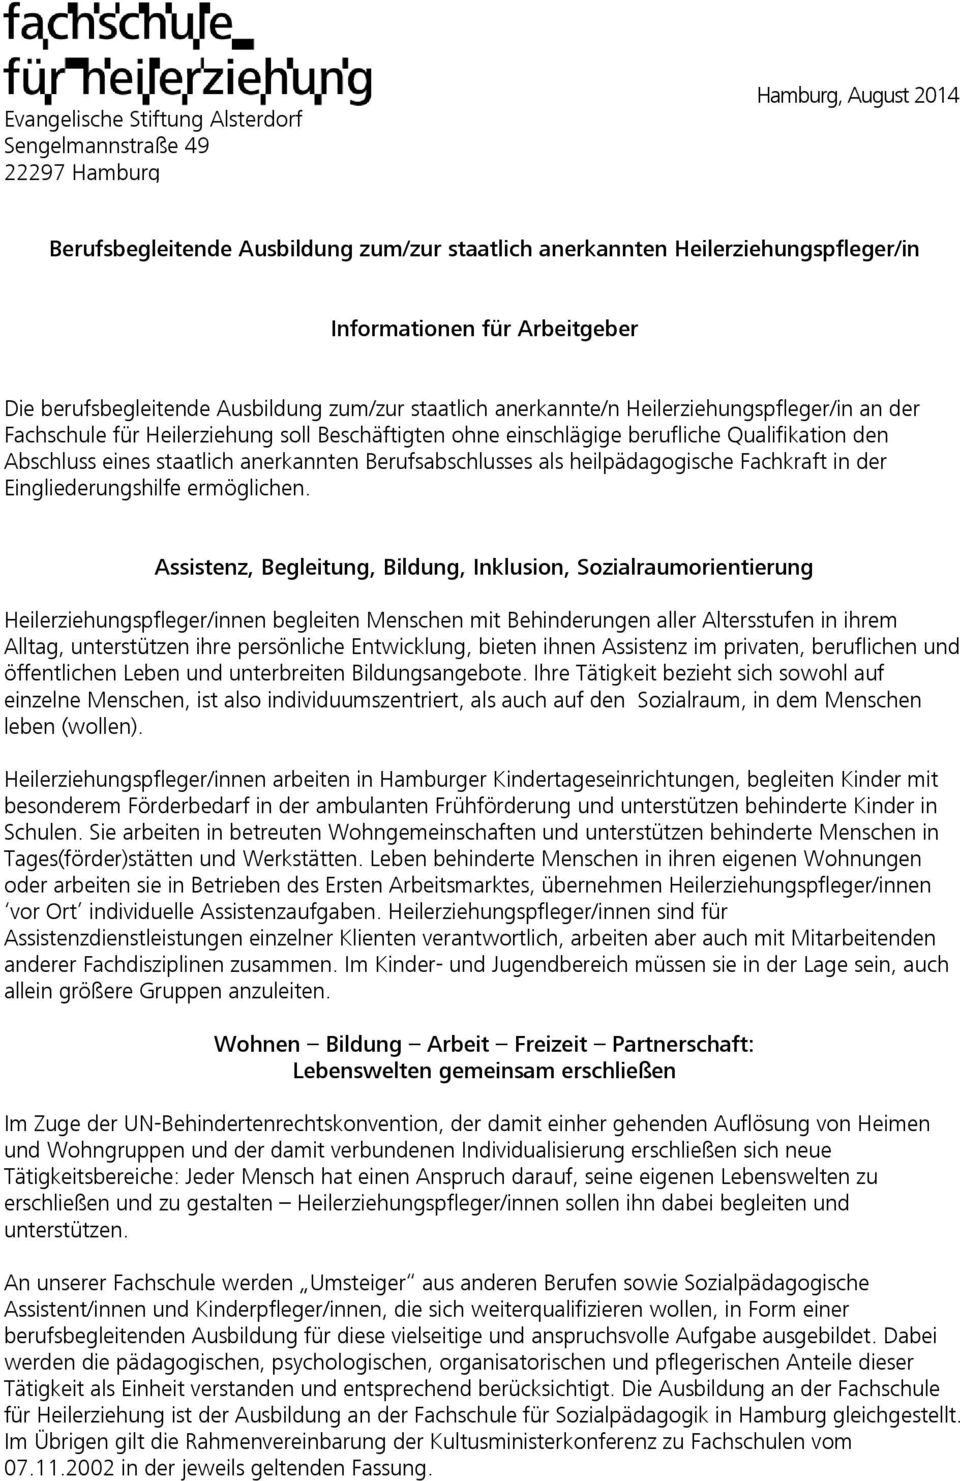 Berufsbegleitende Ausbildung Zum/zur Staatlich Anerkannten verwandt mit Heilerziehungspfleger Ausbildung Hamburg